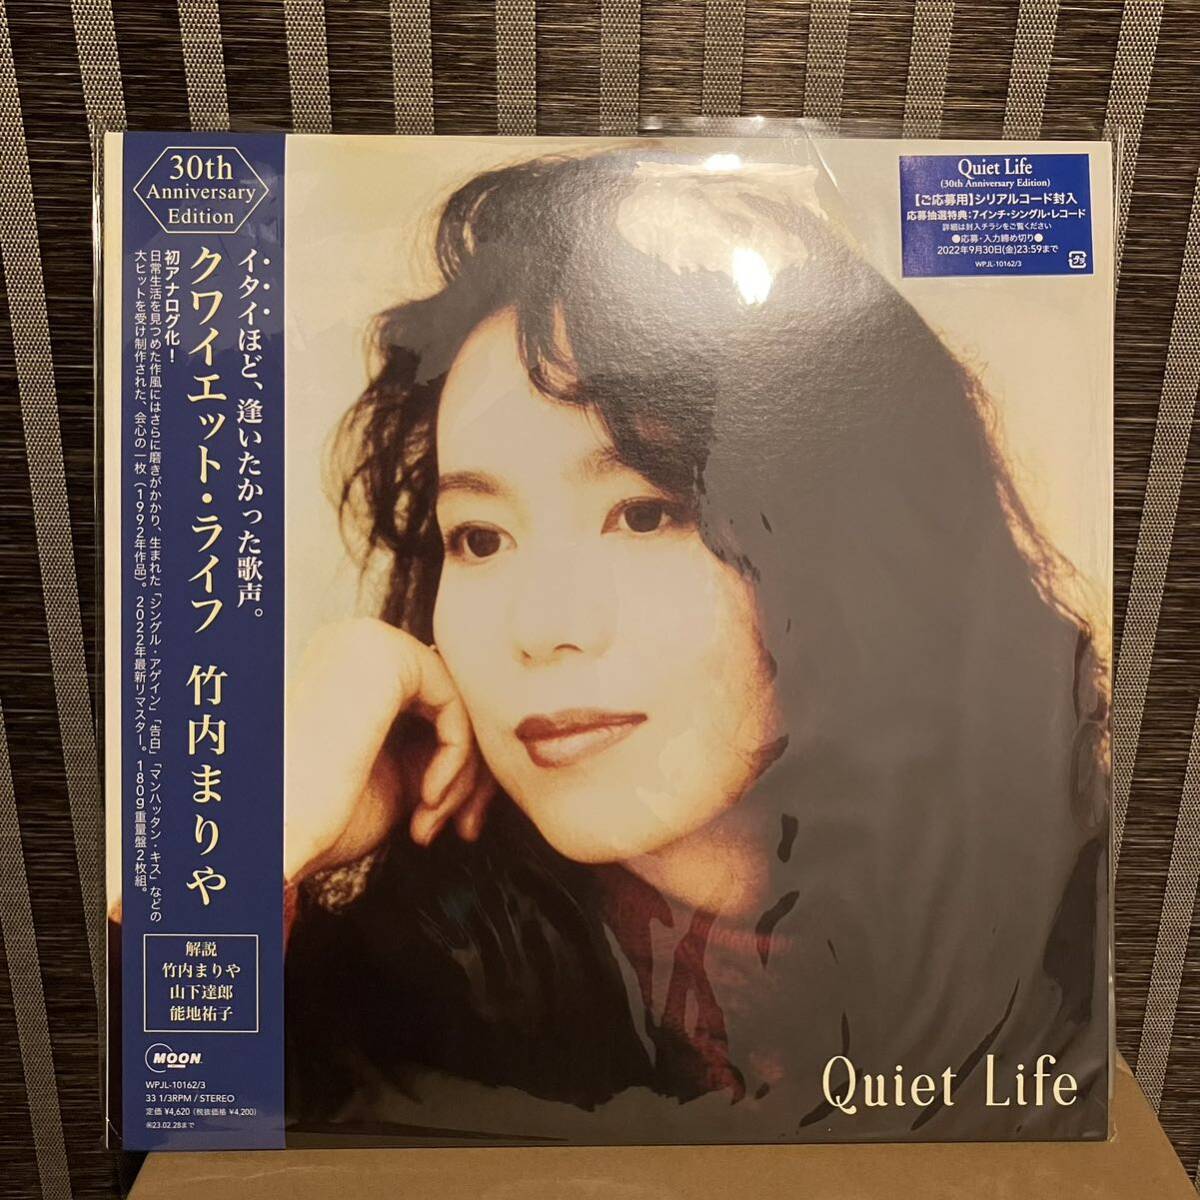 【新品未使用】竹内まりや Quiet Life クワイエット・ライフ リマスター アナログレコード 2枚組 180g重量盤